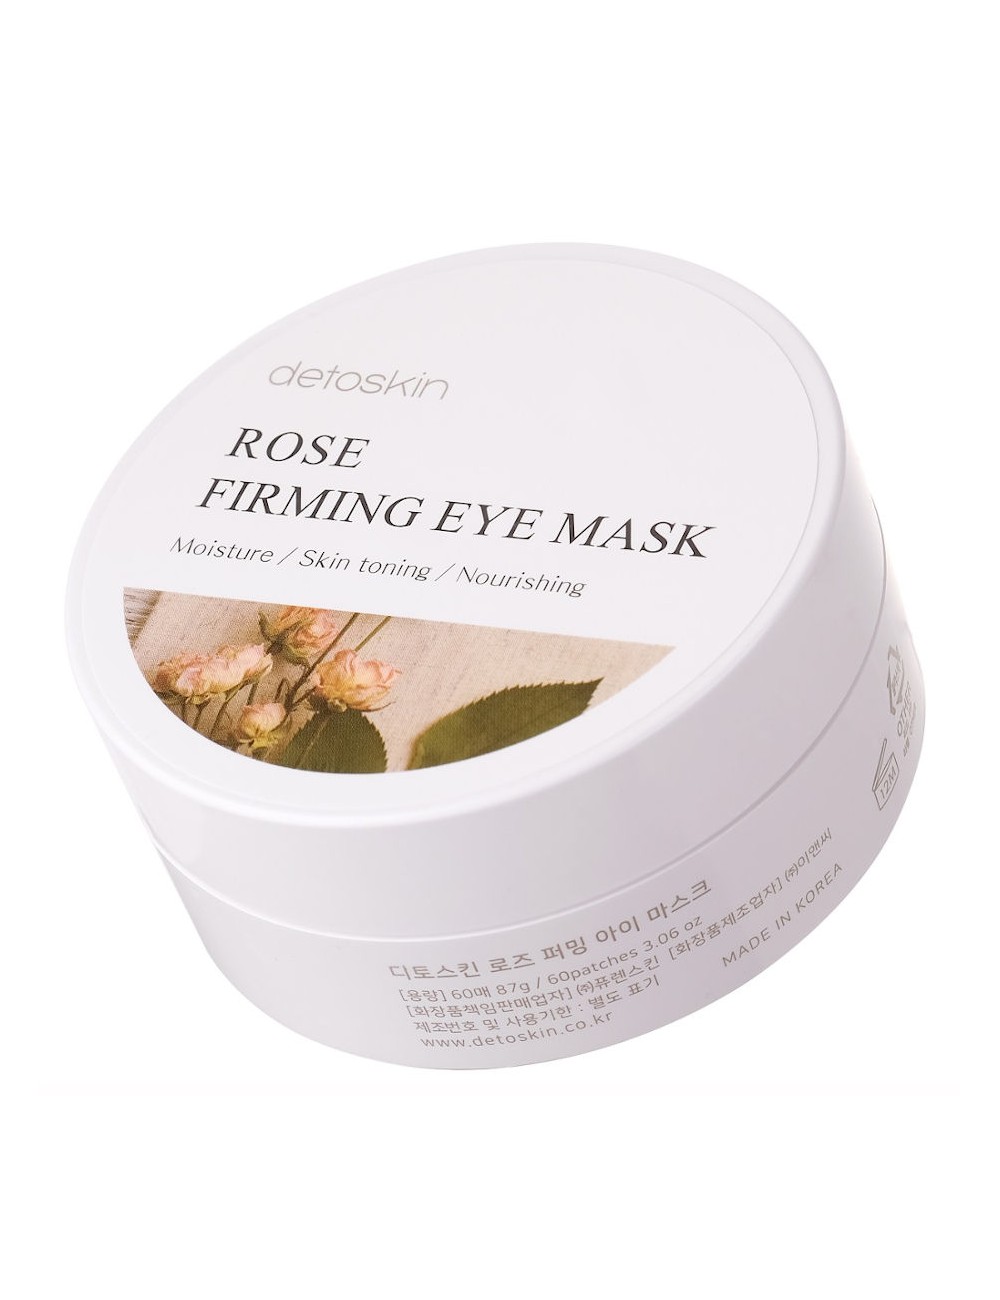 Contorno de Ojos al mejor precio: Rose Firming Eye Mask - Parches para el contorno de ojos Antiarrugas y Reafirmantes de Detoskin en Skin Thinks - Piel Seca